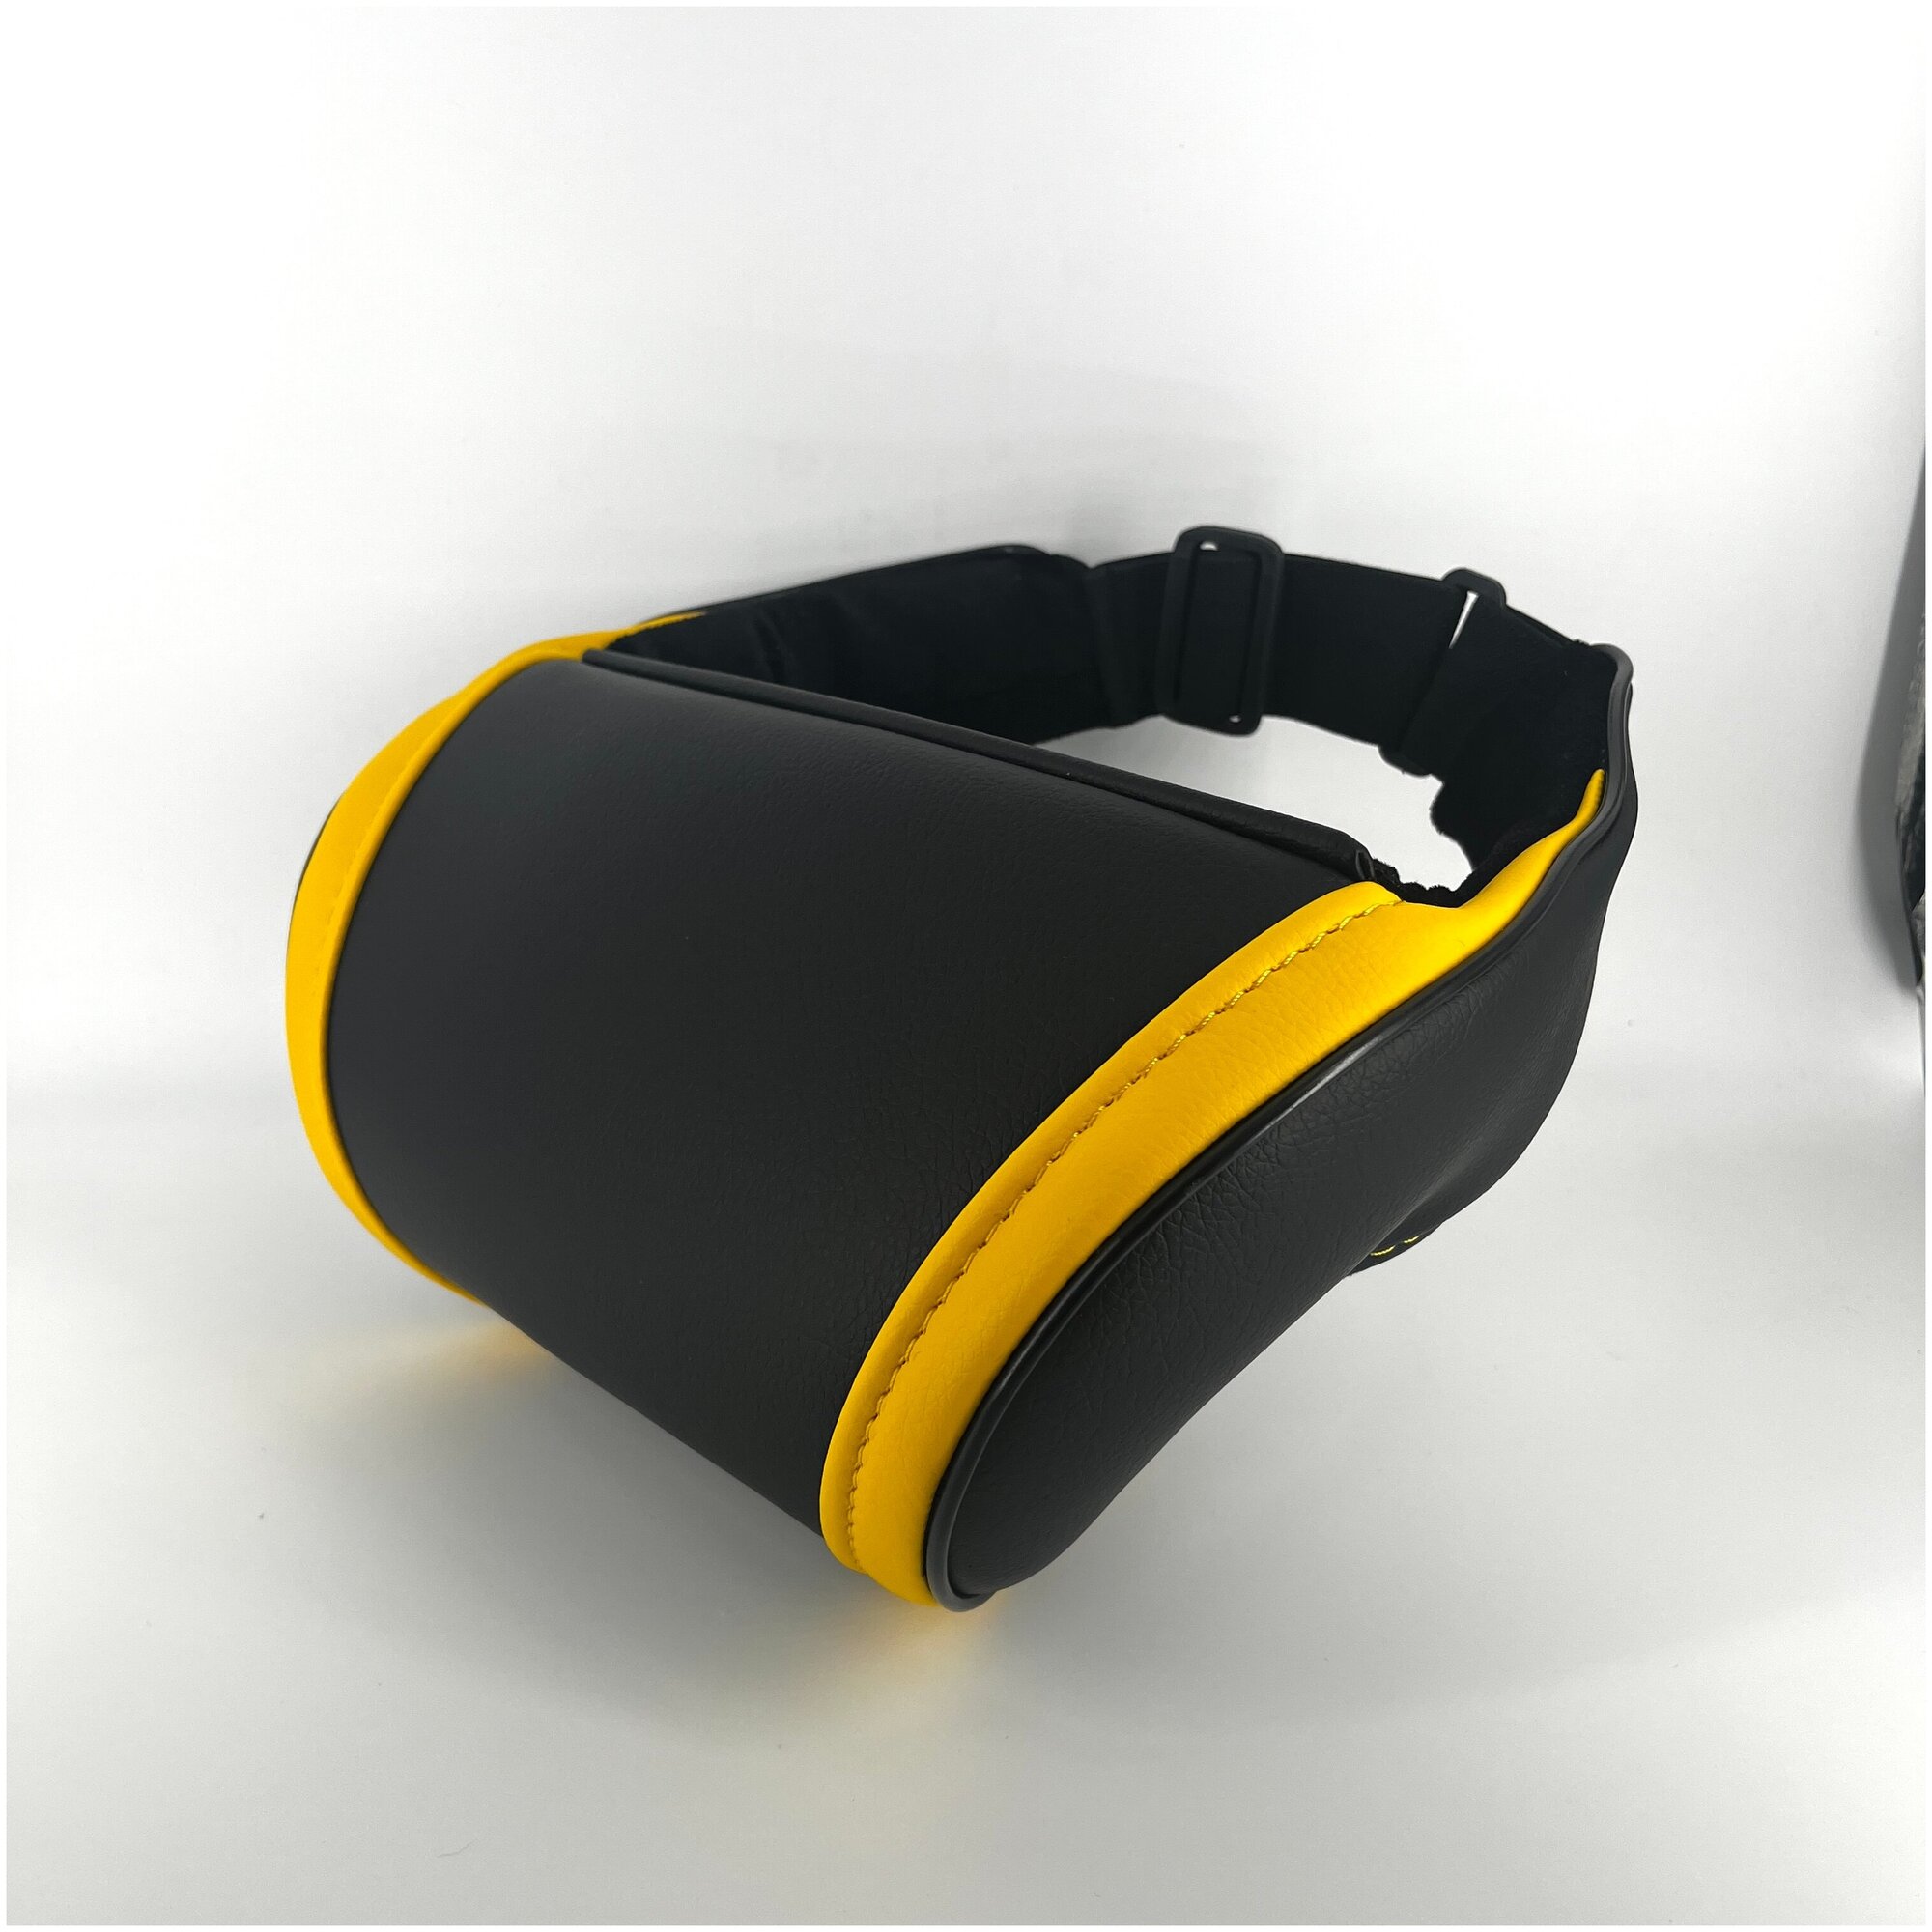 Автомобильная подушка подголовник для шеи на сиденье. Желтые вставки. Подарок автолюбителю в салон